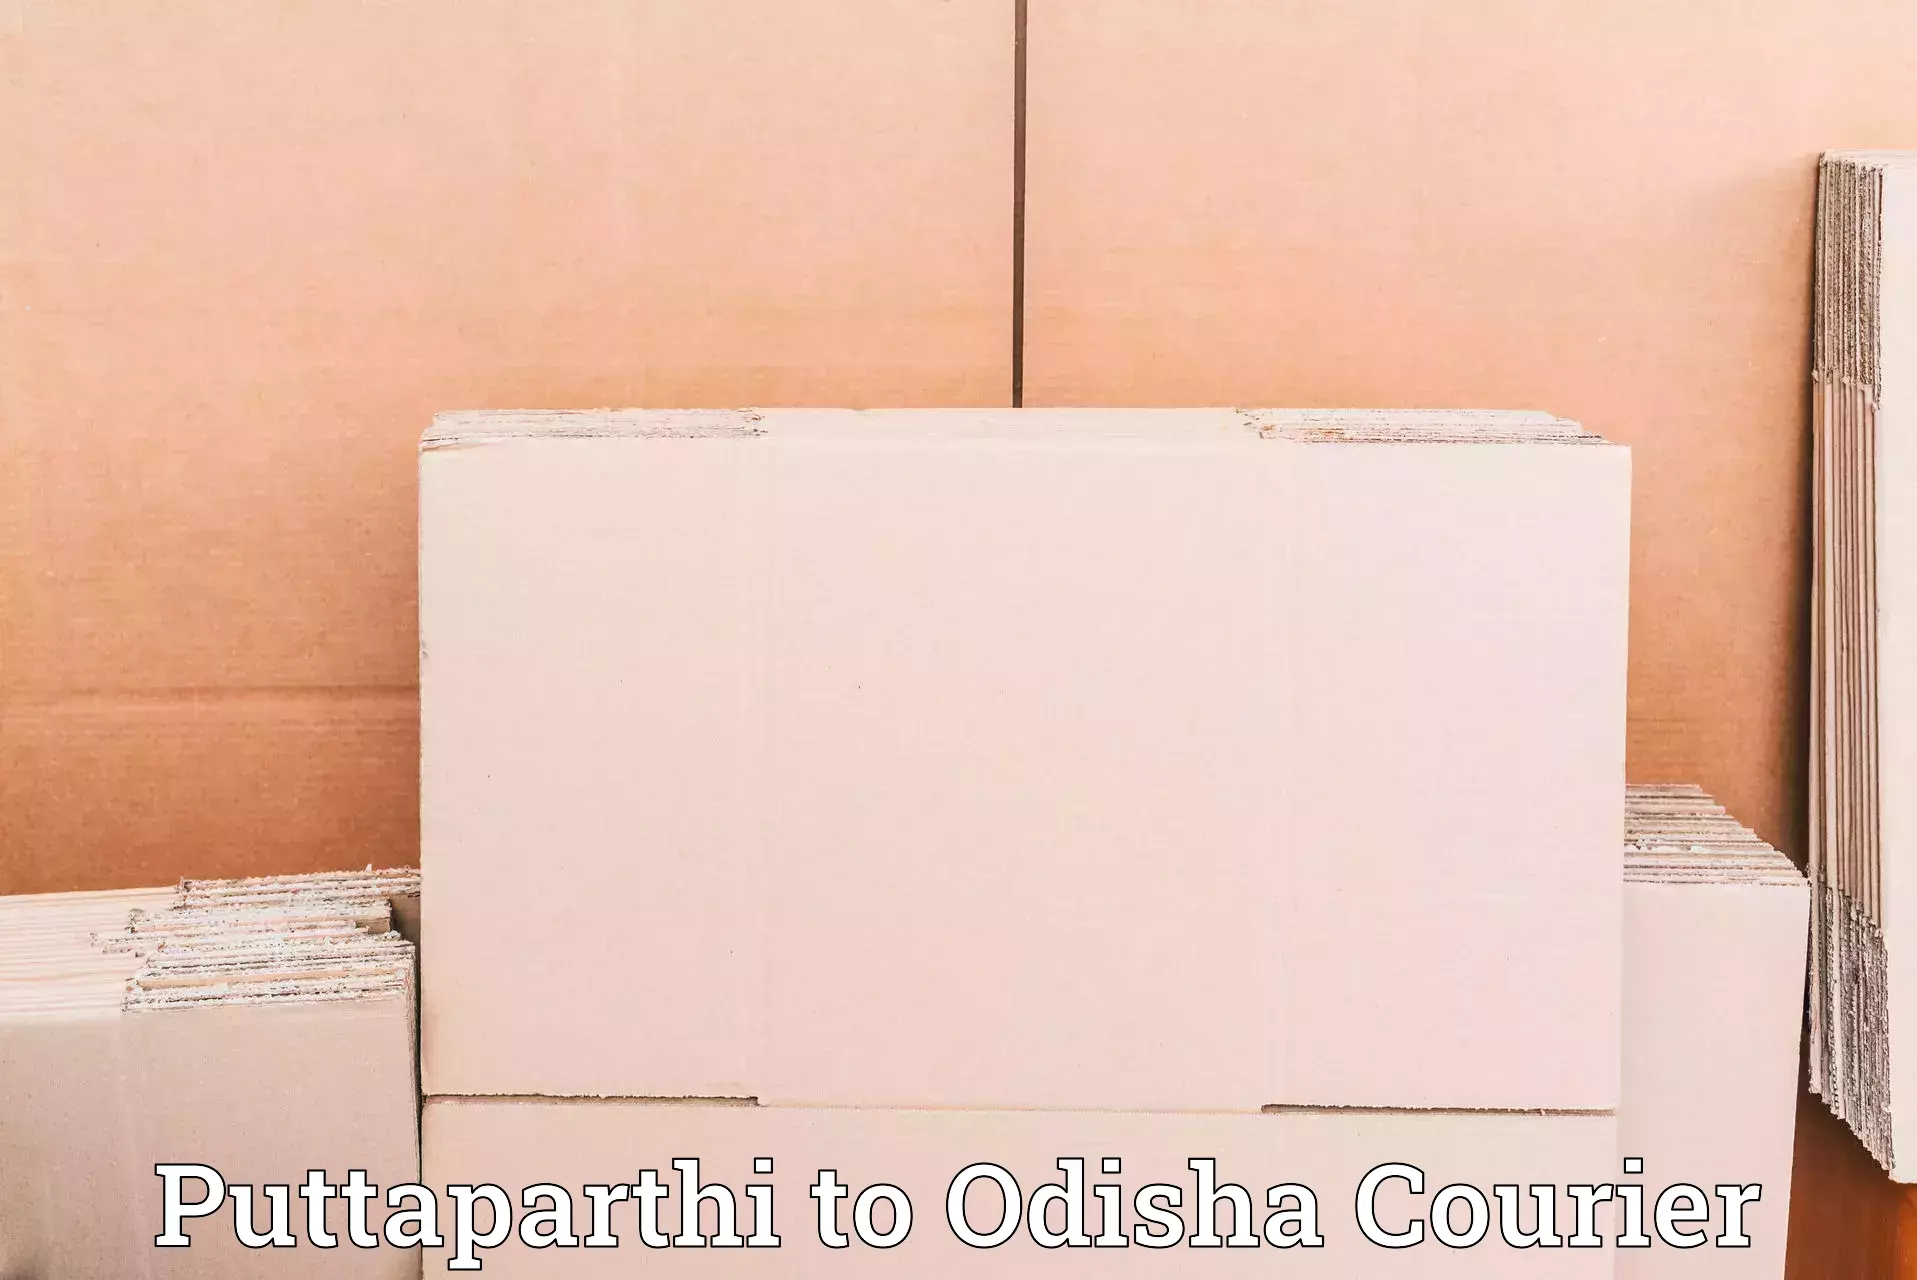 Reliable courier service Puttaparthi to Nirakarpur